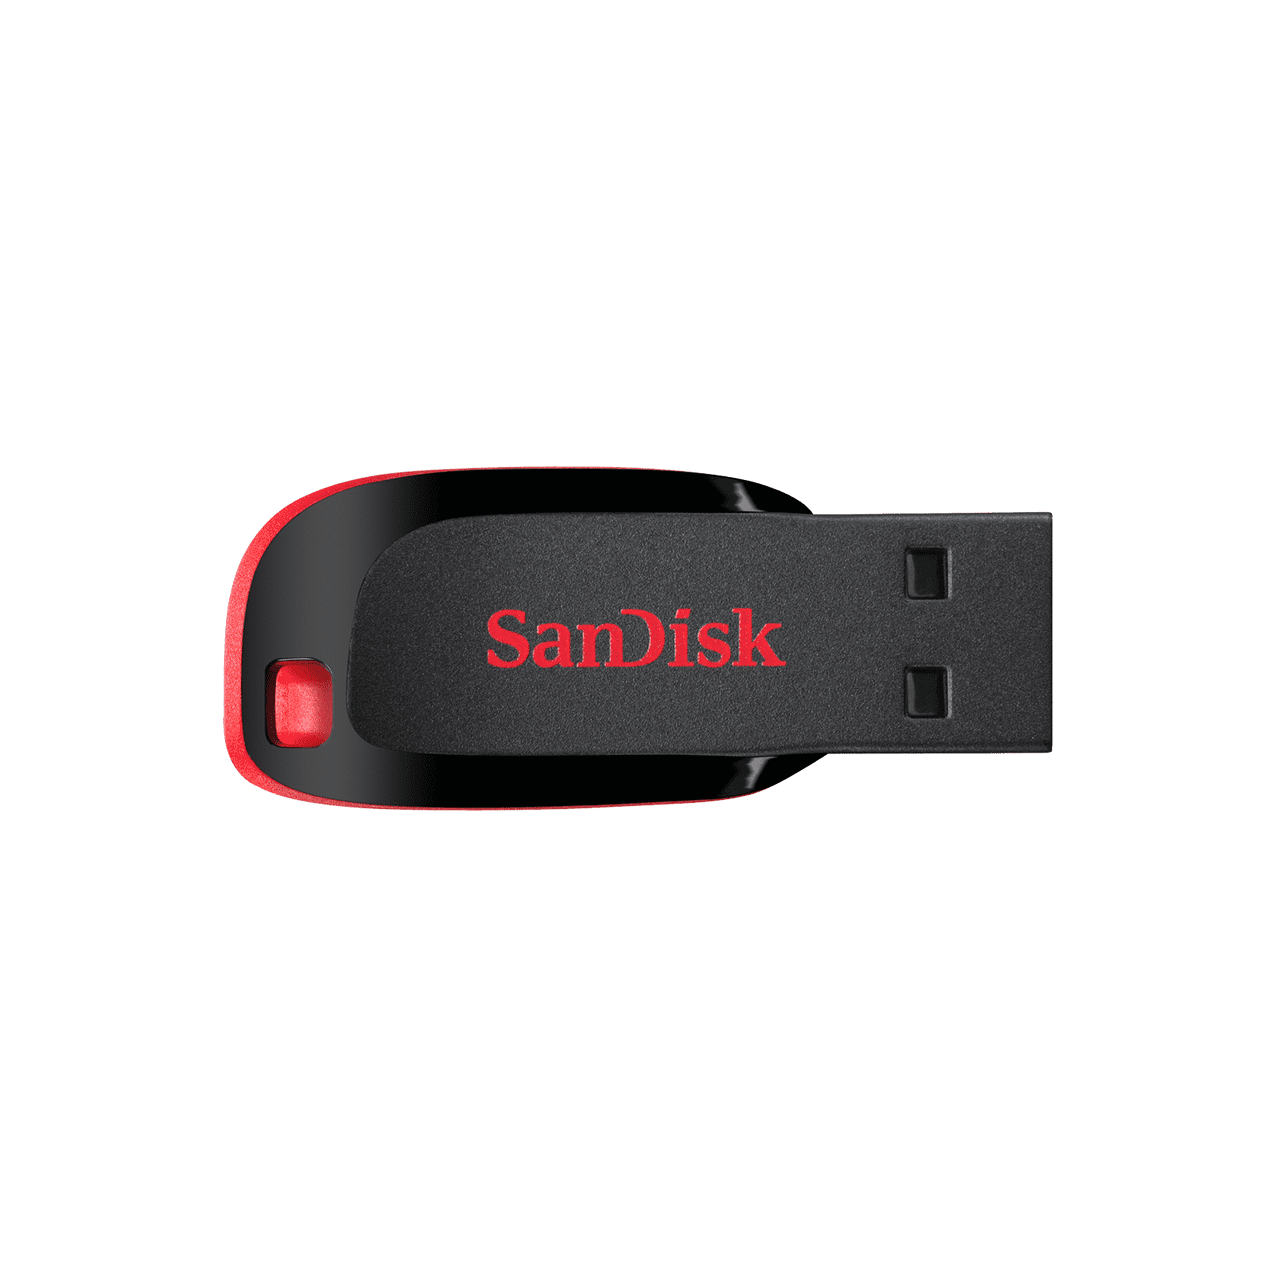 [SDCZ50-032G-B35] Sandisk Cruzer Blade 32GB